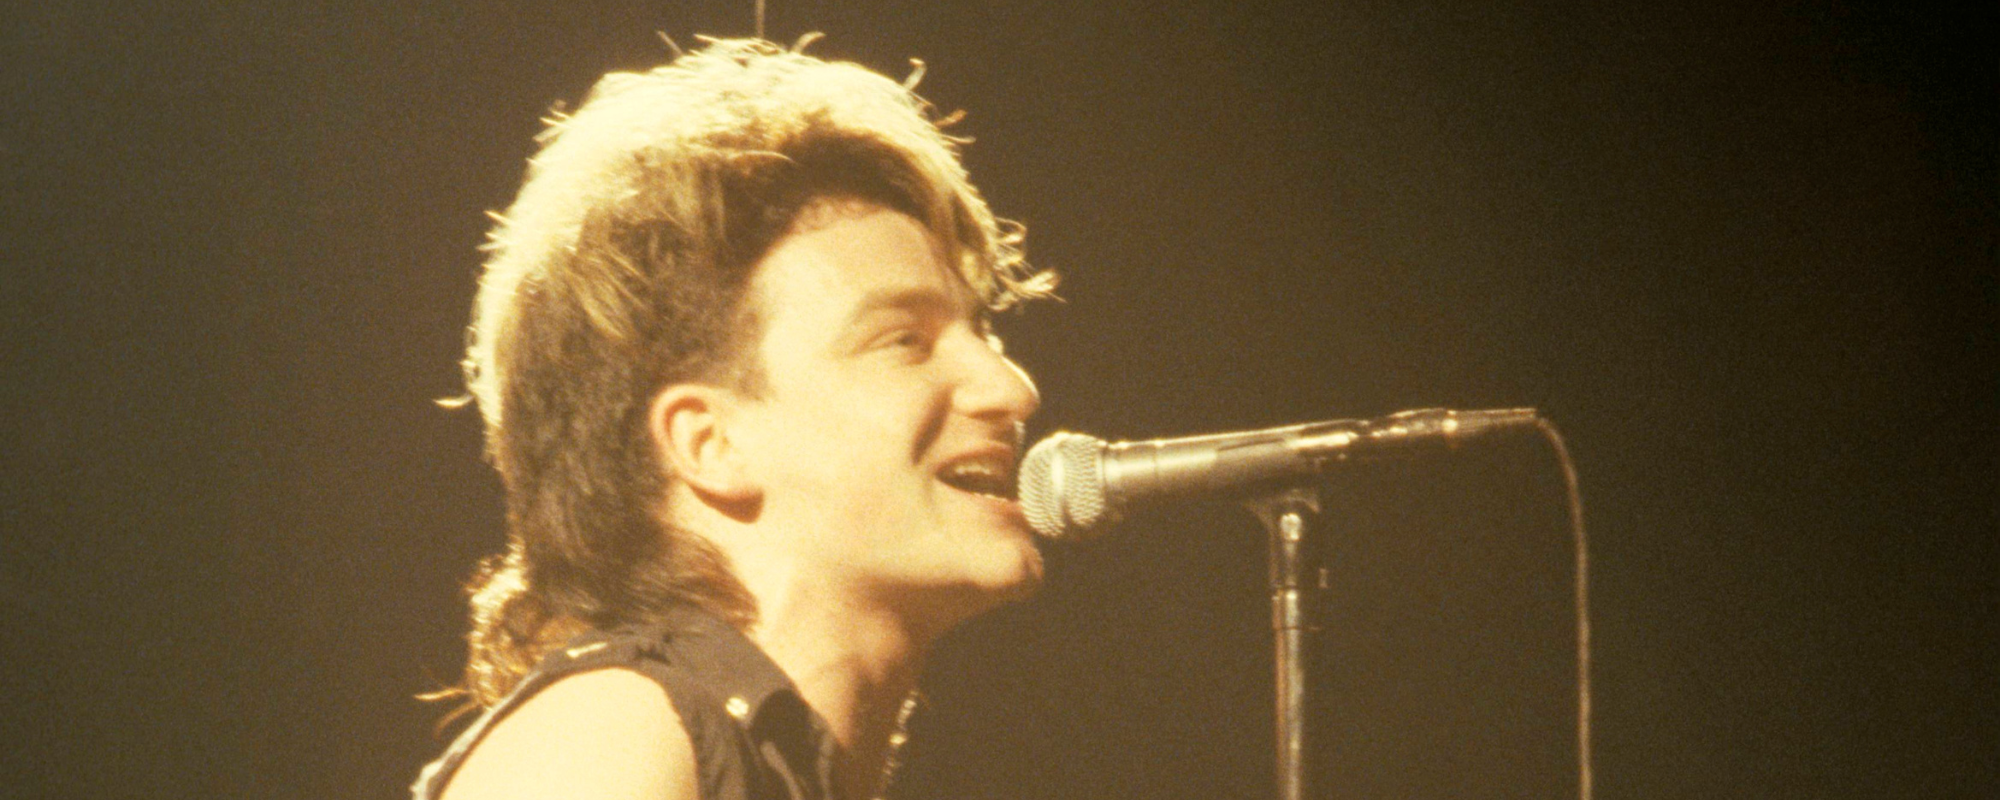 Top 5 U2 Songs That Helped Define the 1980s